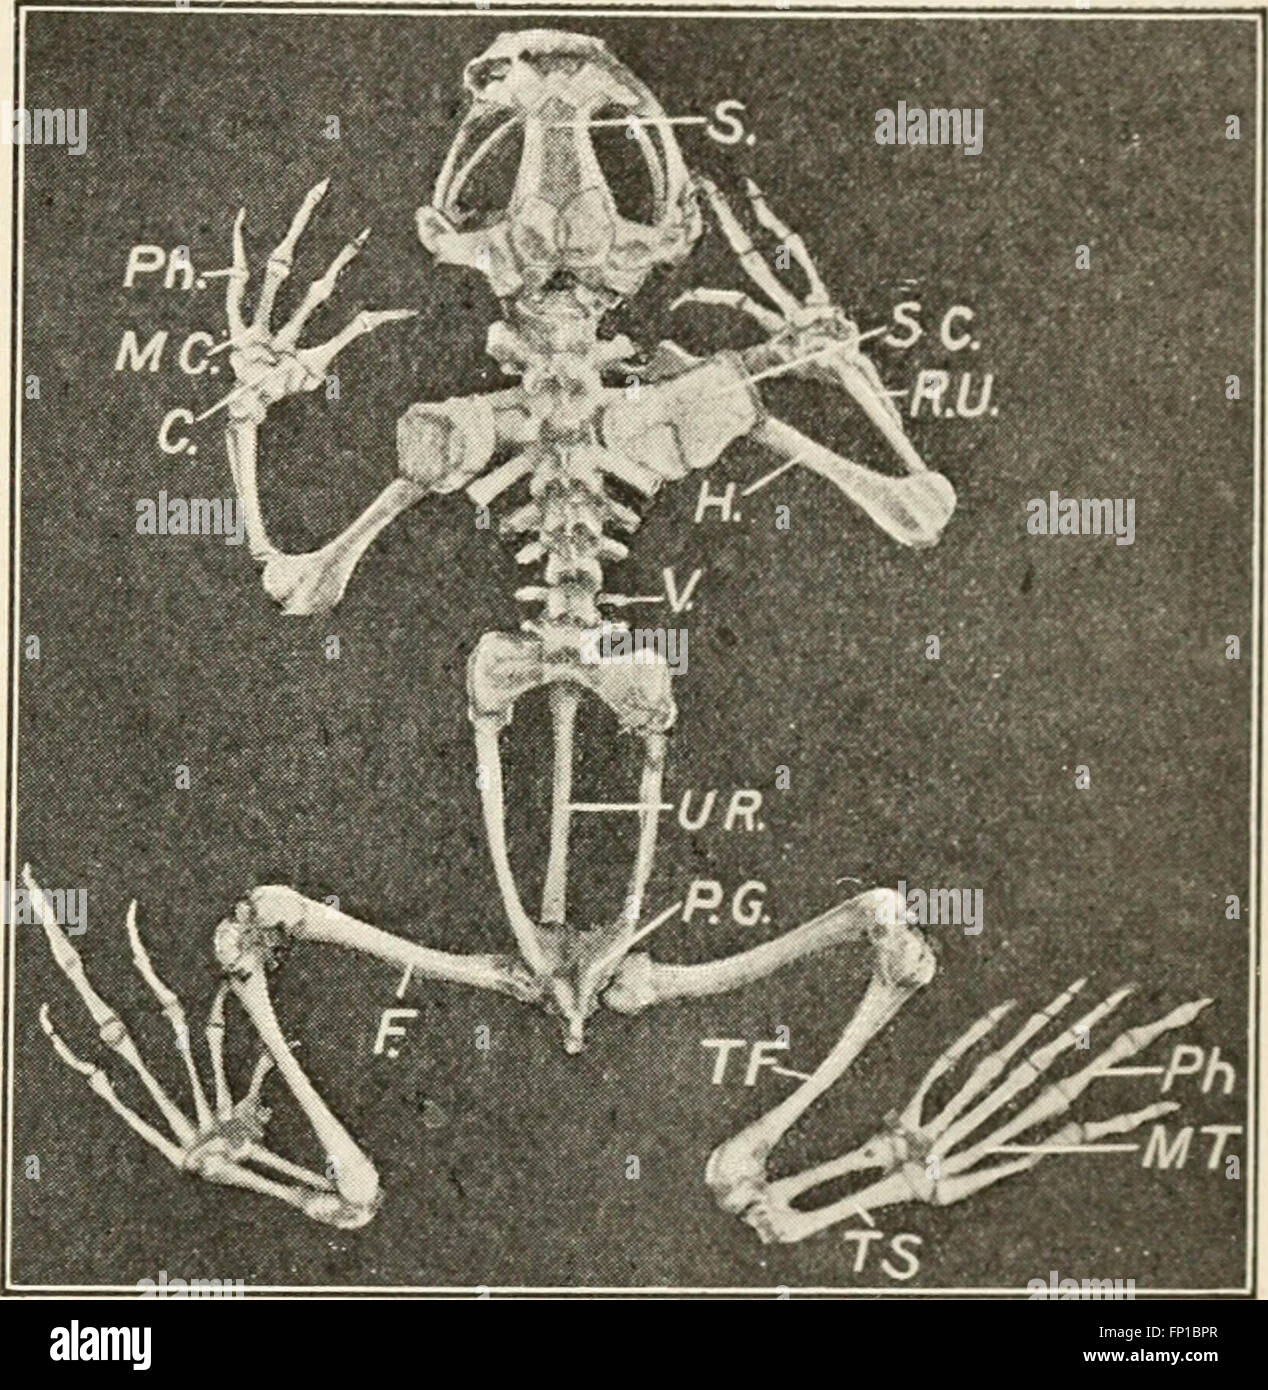 Éléments de biologie ; un texte utile-livre de corréler la botanique, la zoologie et la physiologie humaine ((c1907)) Banque D'Images